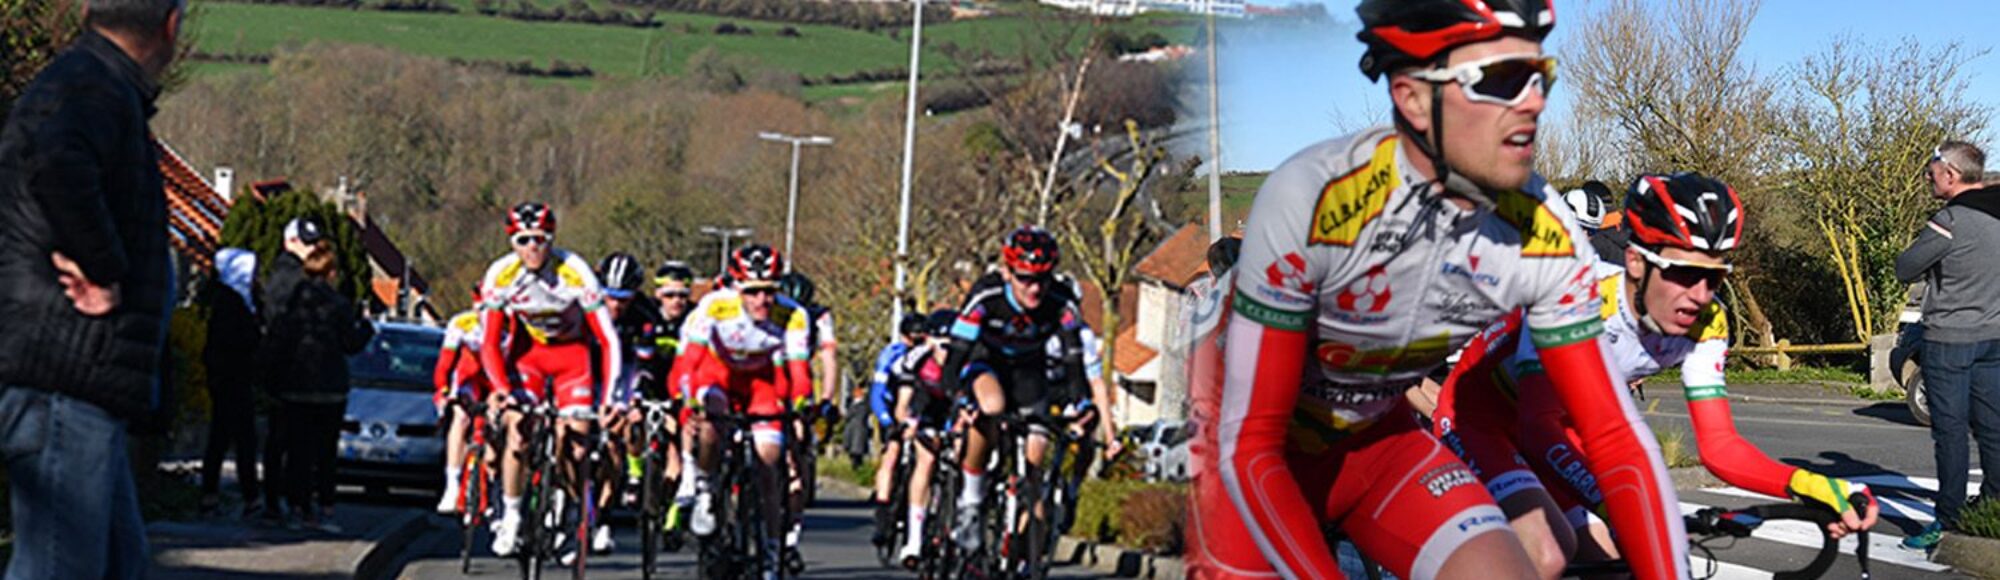 2022 Wimille la ronde calais wimille course cycliste régionale à Wimille_1500px dans le Boulonnais et le pas de calais9942